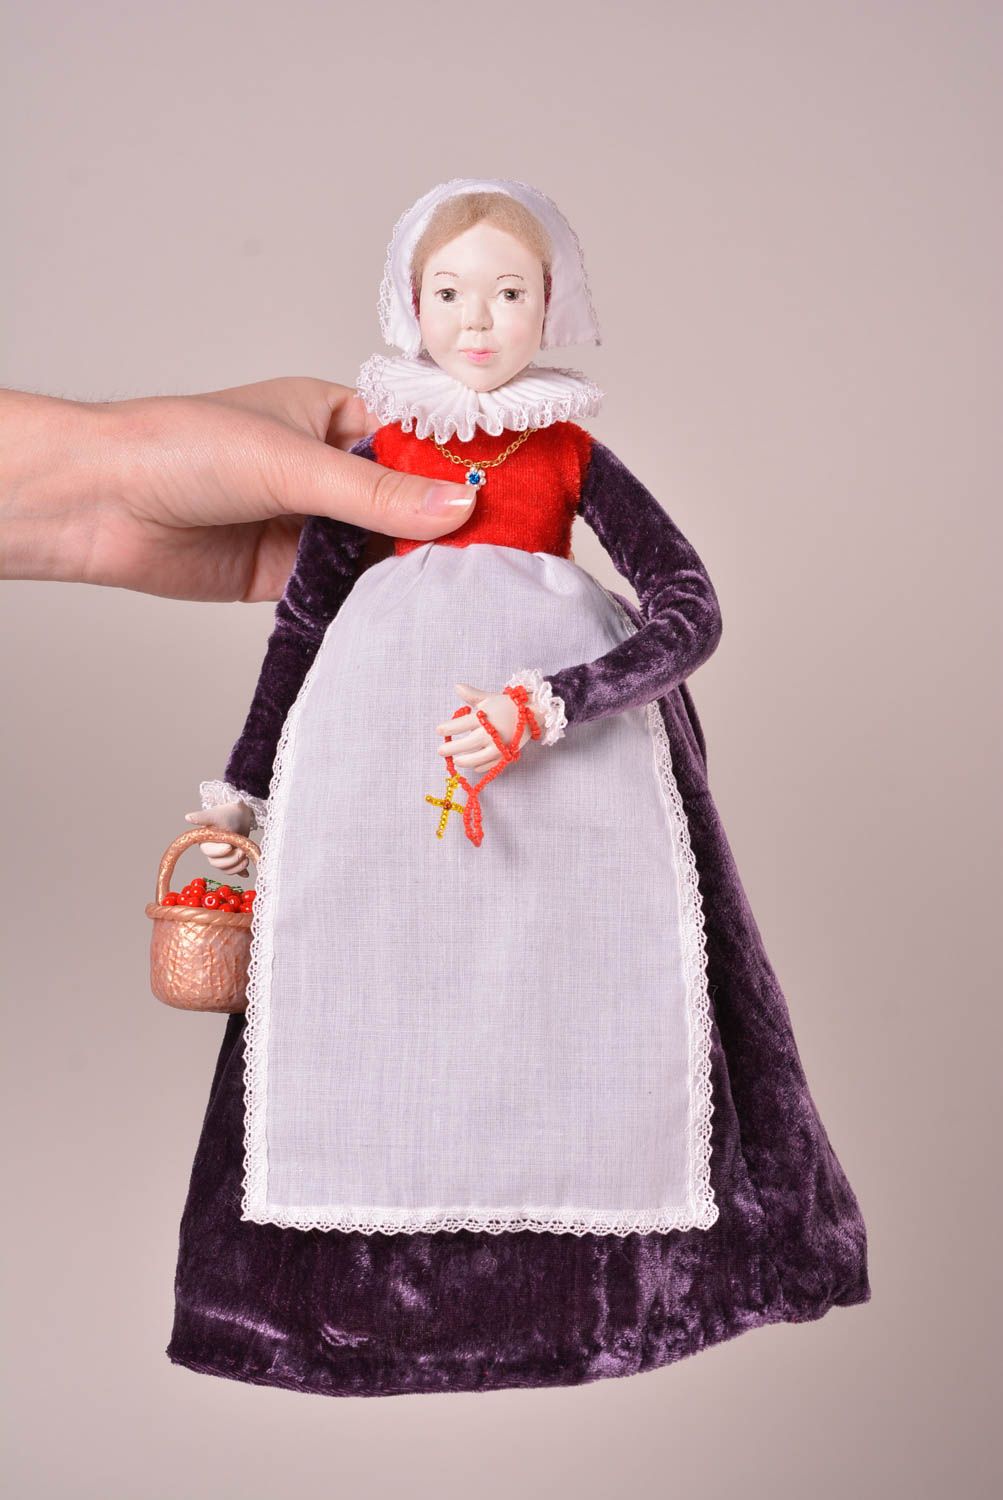 Авторская кукла игрушка ручной работы дизайнерская кукла из пластики и текстиля фото 2